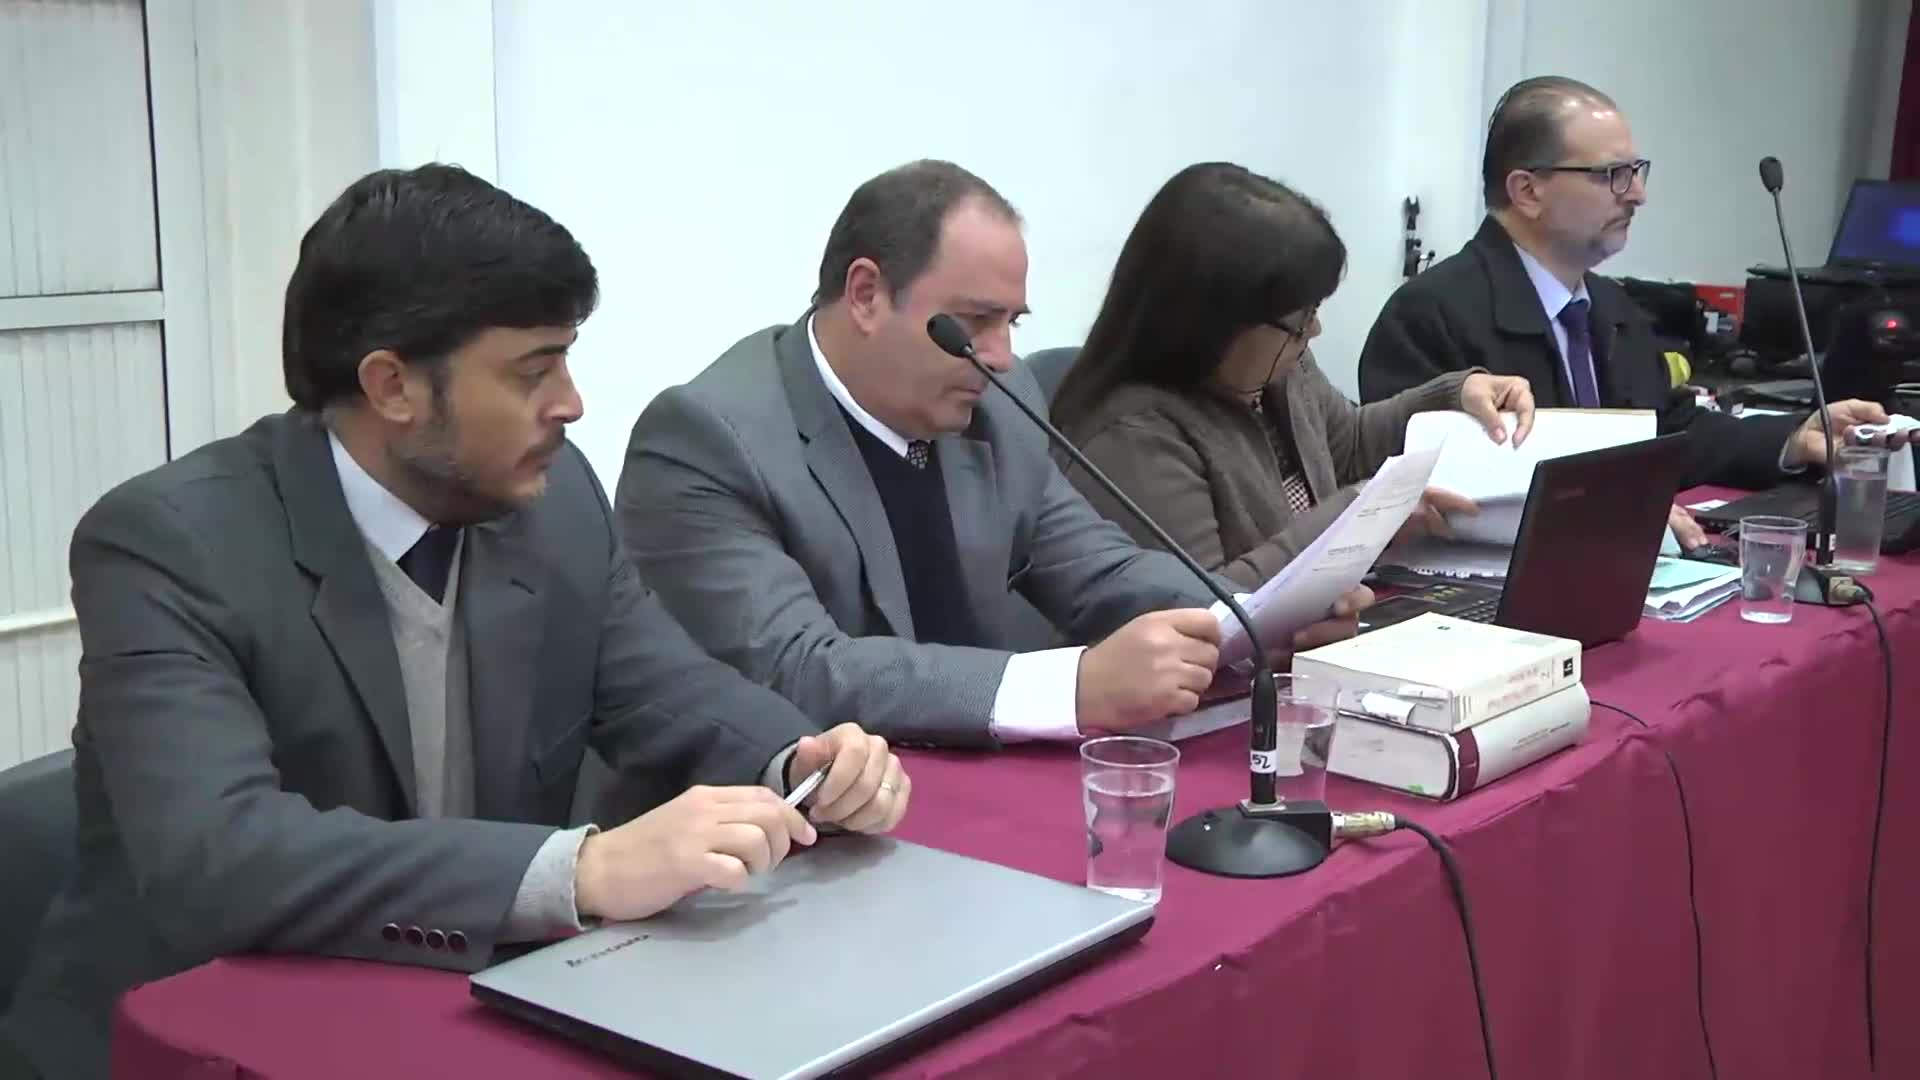 Tercera jornada de debate: continúa el juicio por delitos de lesa humanidad en virasoro